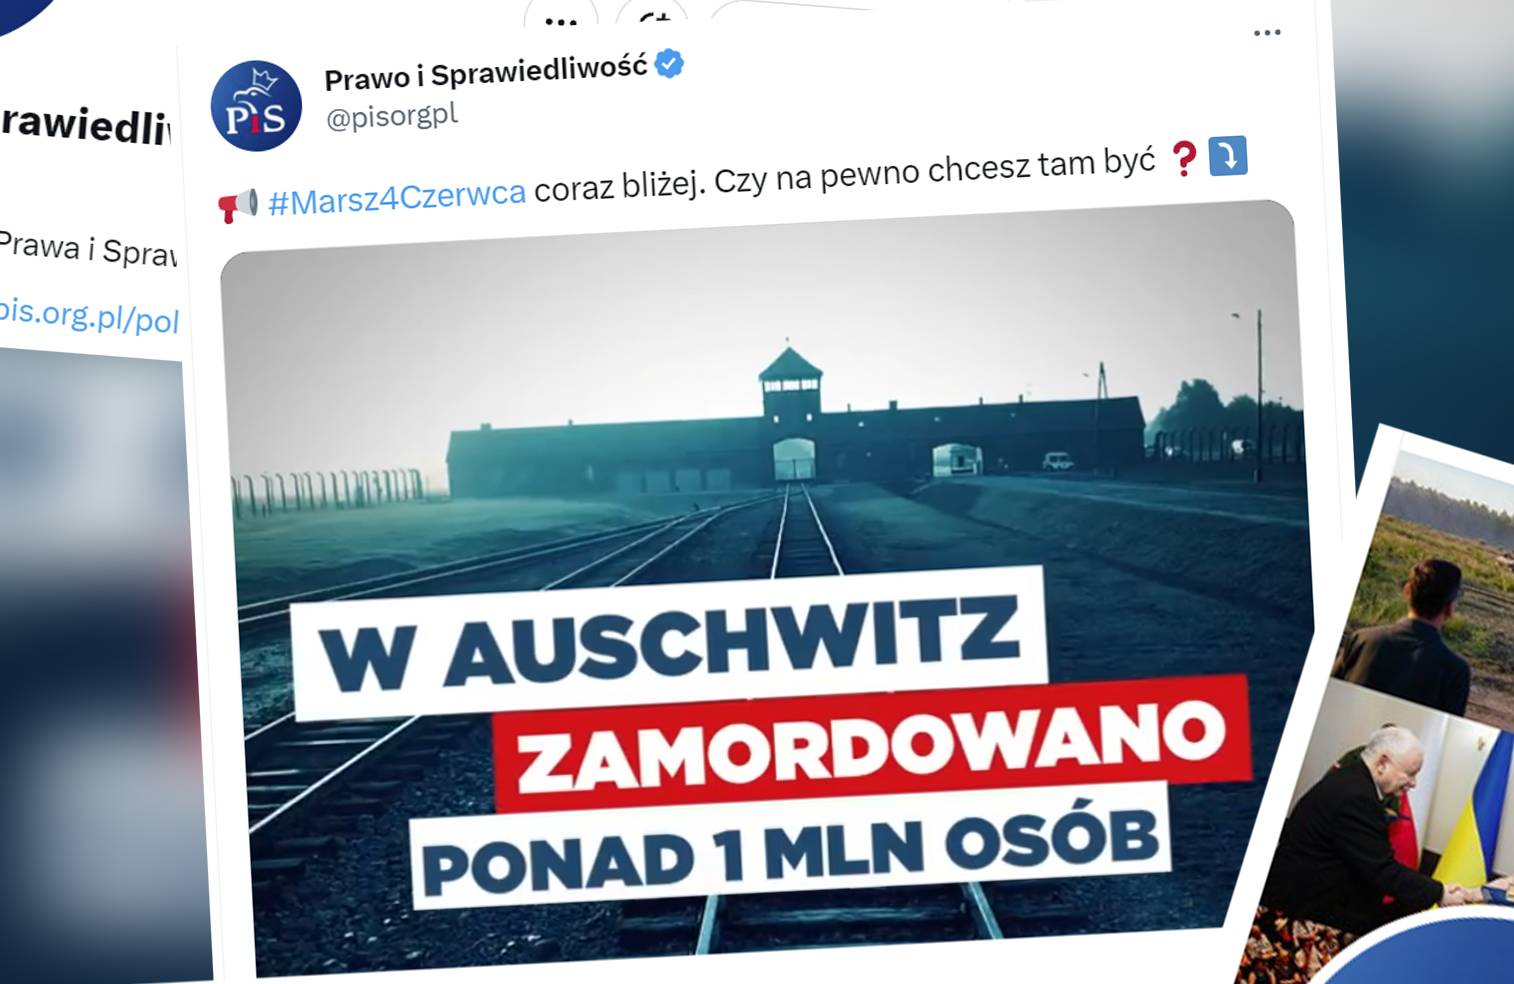 Zrzuty ekranu z Twittera, z tweetem z konta "Prawo i Sprawiedliwość" z kadrem z klipu video przedstawiającym obóz koncentracyjny Auschwitz